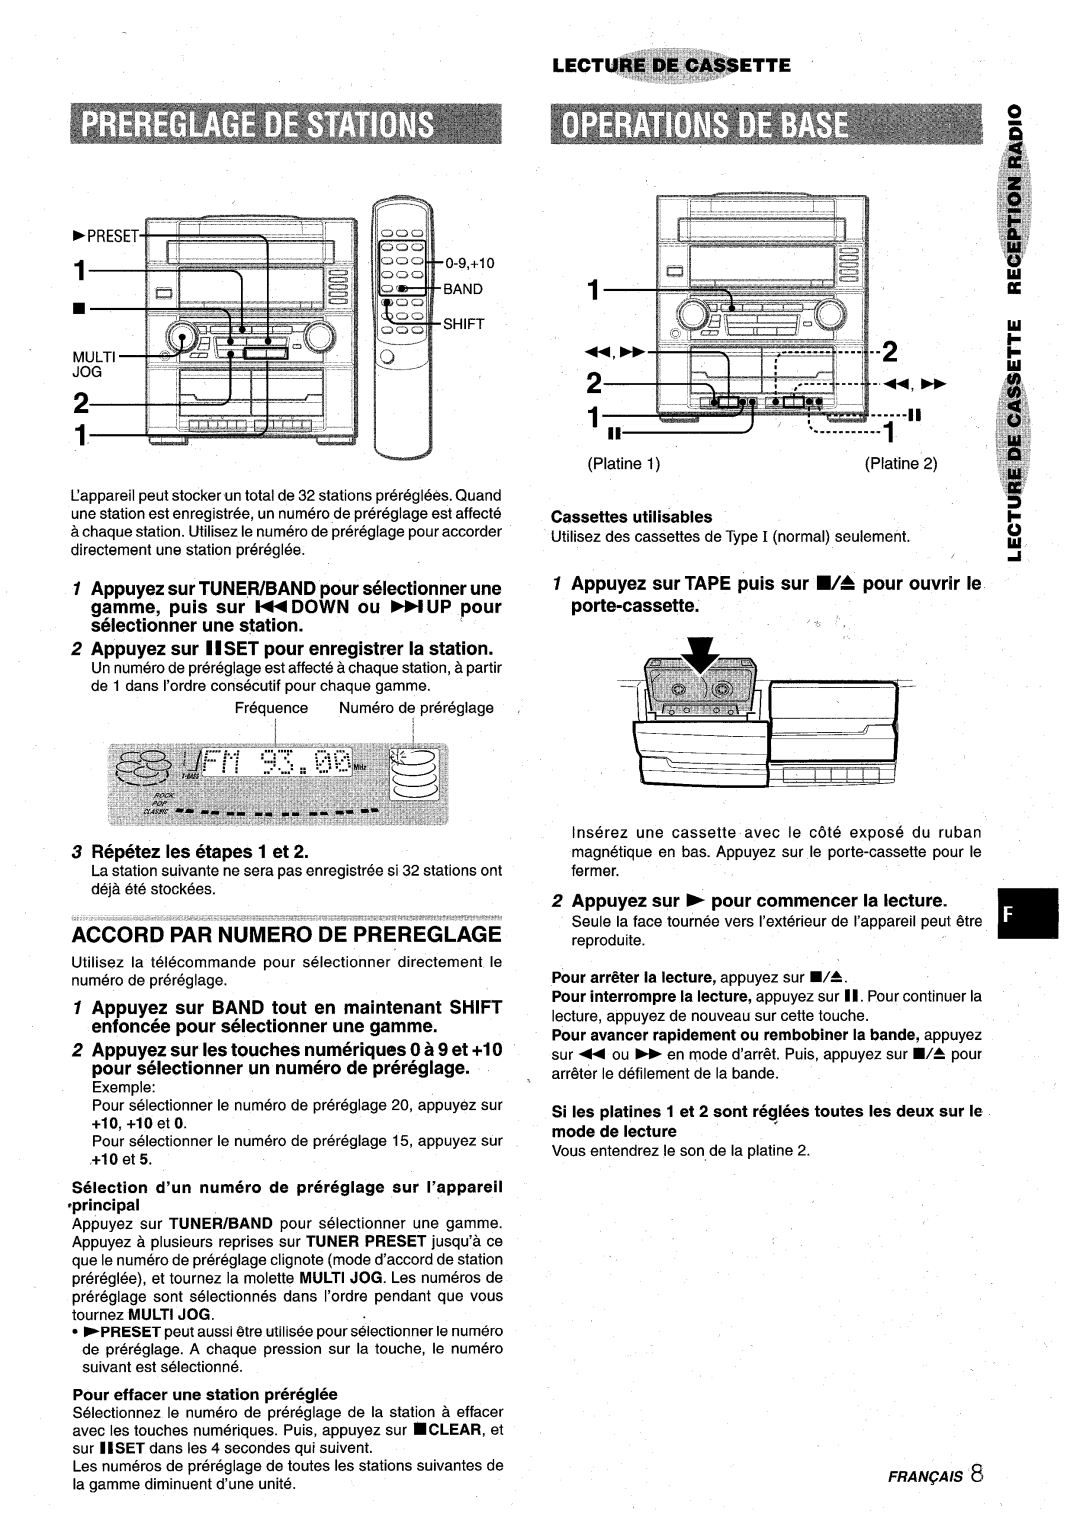 Aiwa XR-M75 manual Accord Par Numero De Prereglage, Appuyez sur 1I SET pour enregistrer la station, Repetez Ies etapes 1 et 